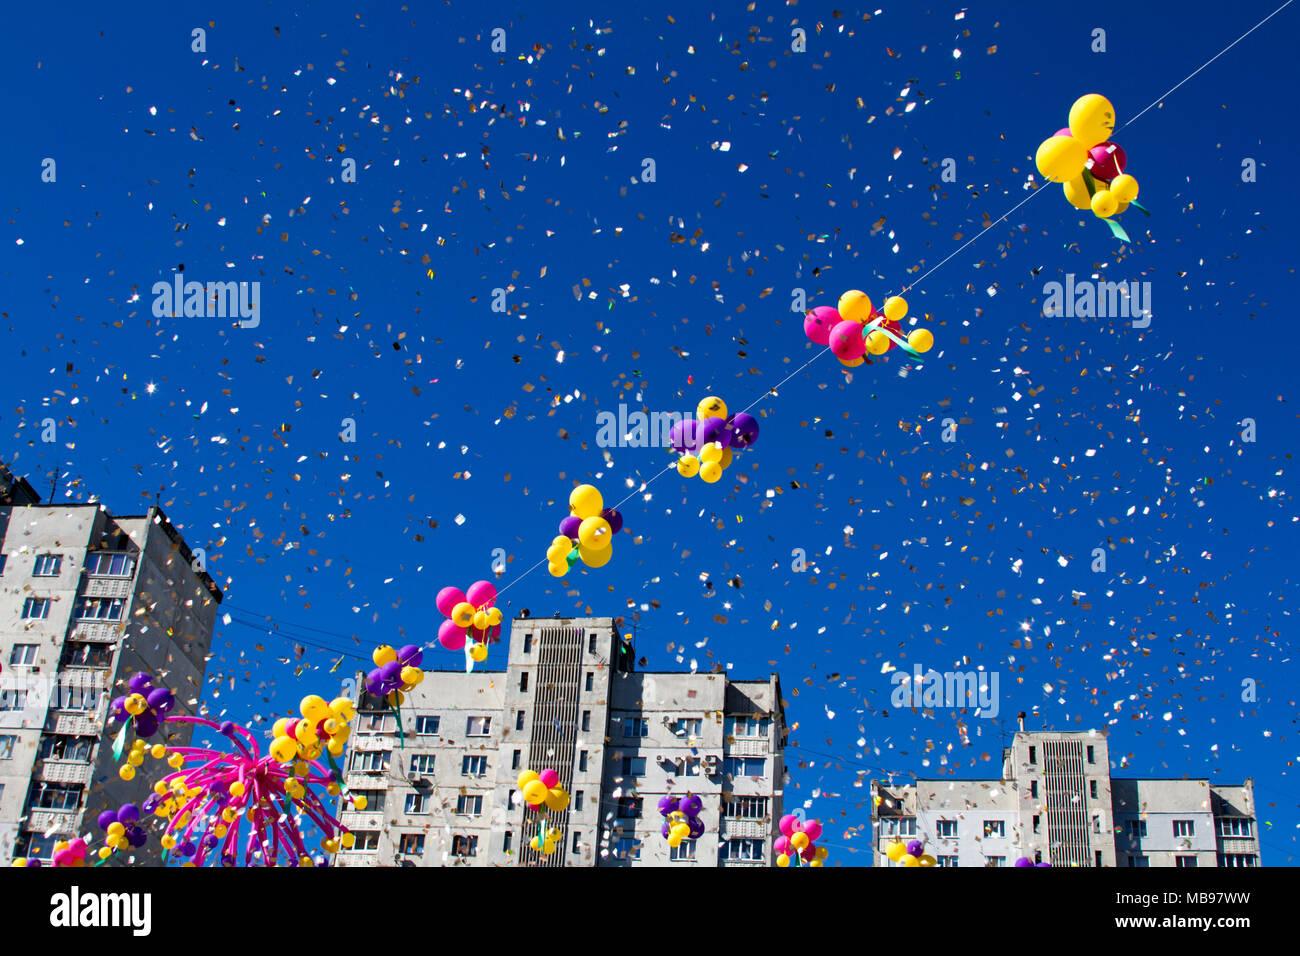 Colorful ballons gonflables multicolores voler dans l'air à l'arrière-plan d'arbres et de ciel bleu pendant le festival de fête. Saluer en ciel de balloo colorés Banque D'Images